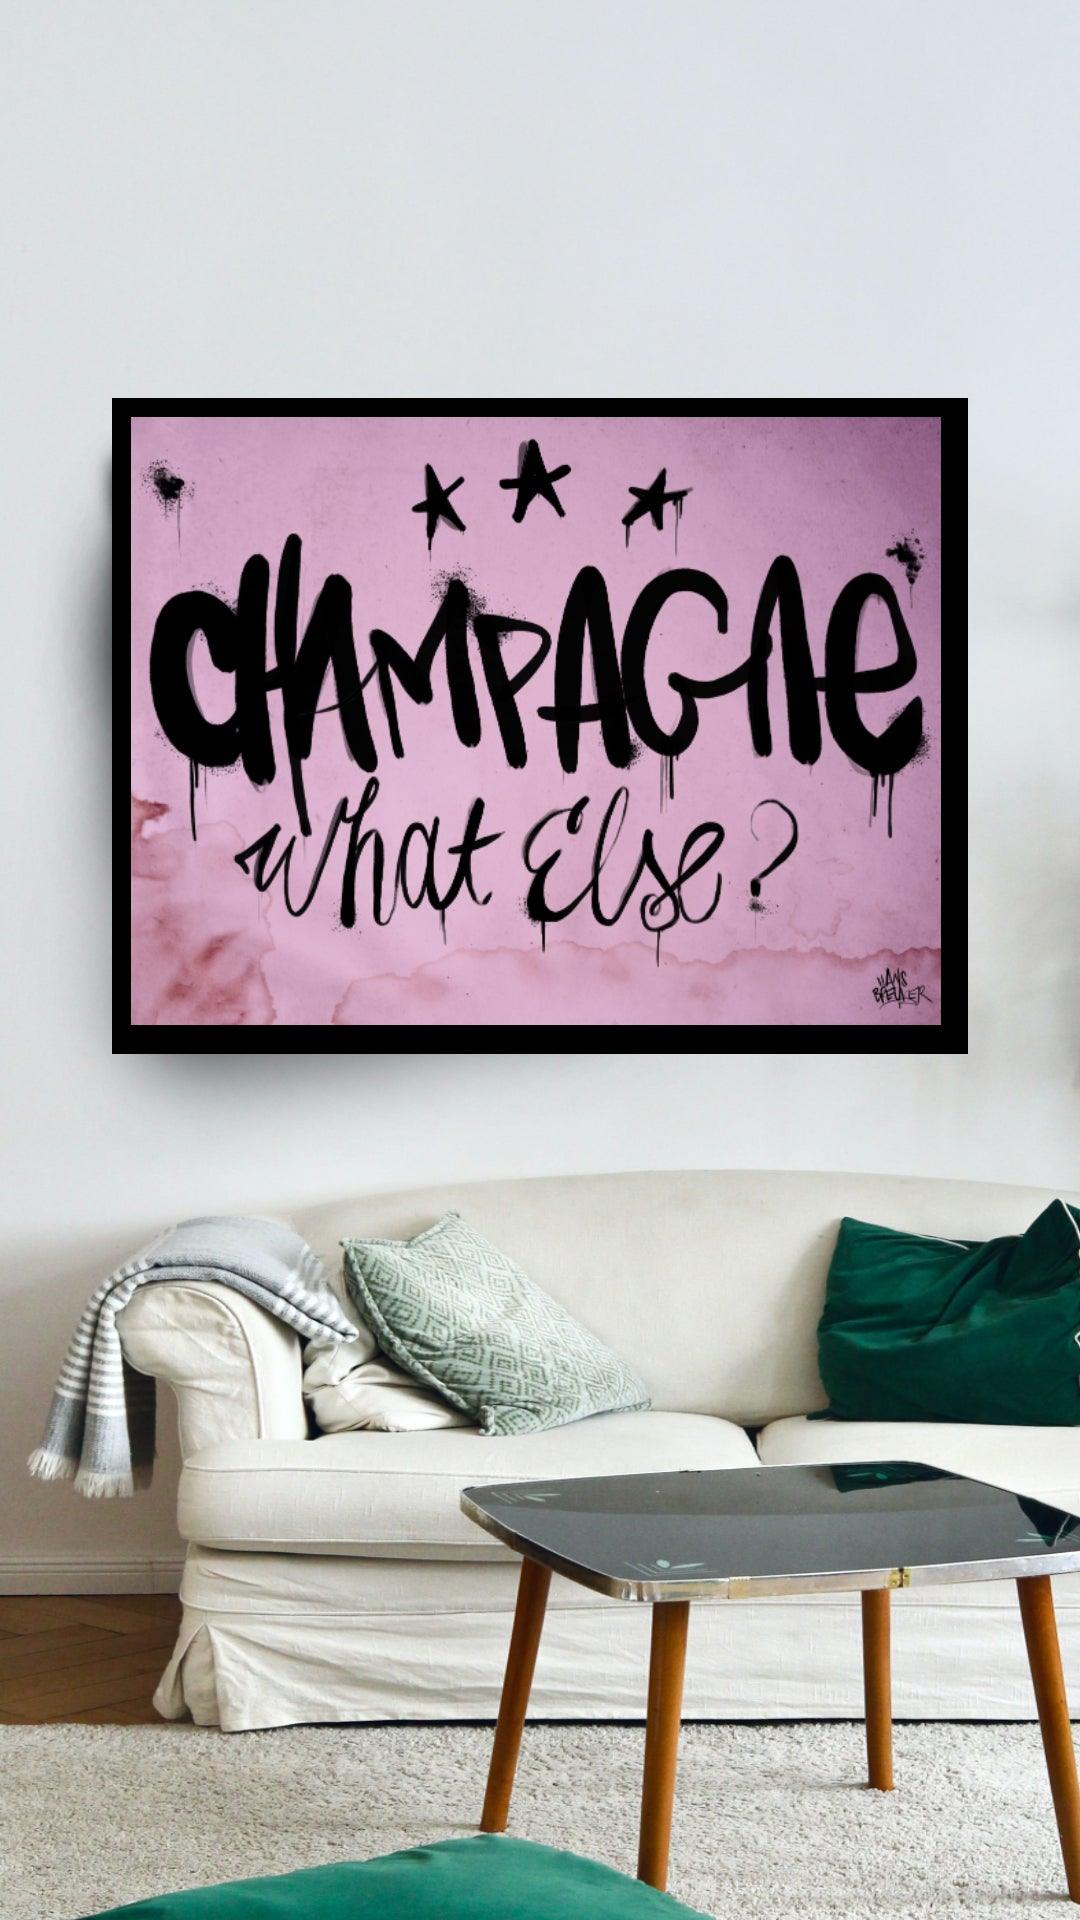 Champagne, what else - Hans Breuker